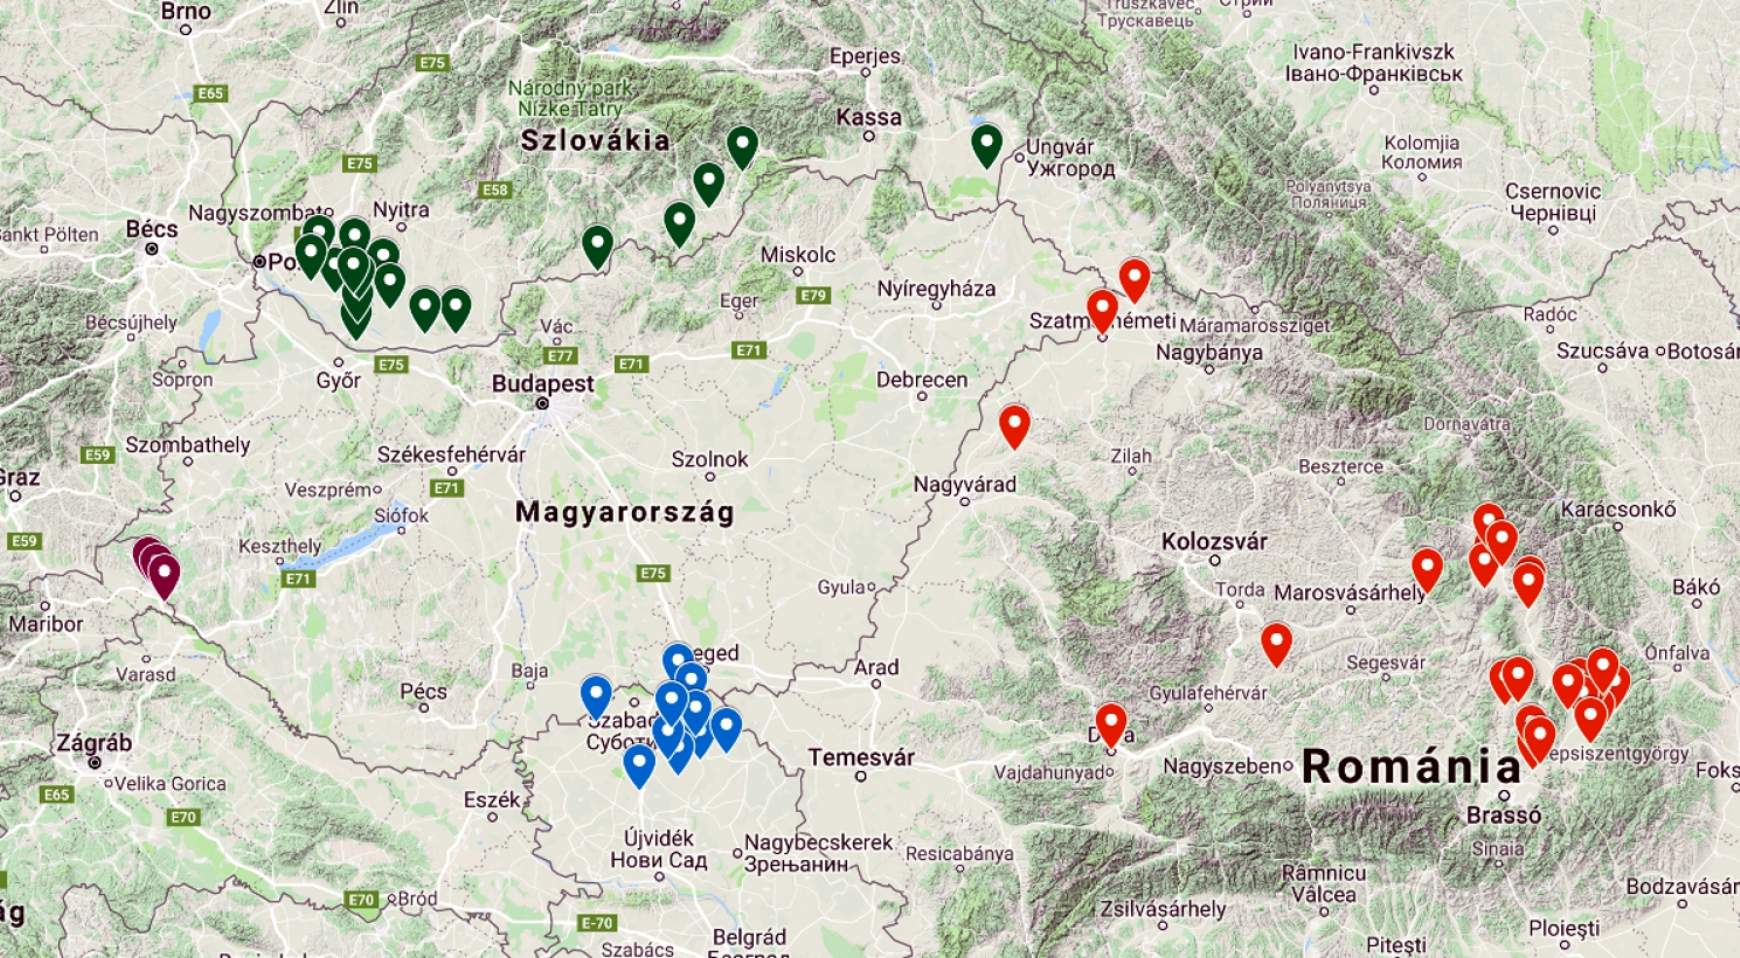 Több mint 70 csapat jelentkezett. A térkép a csapatok településeit mutatja.